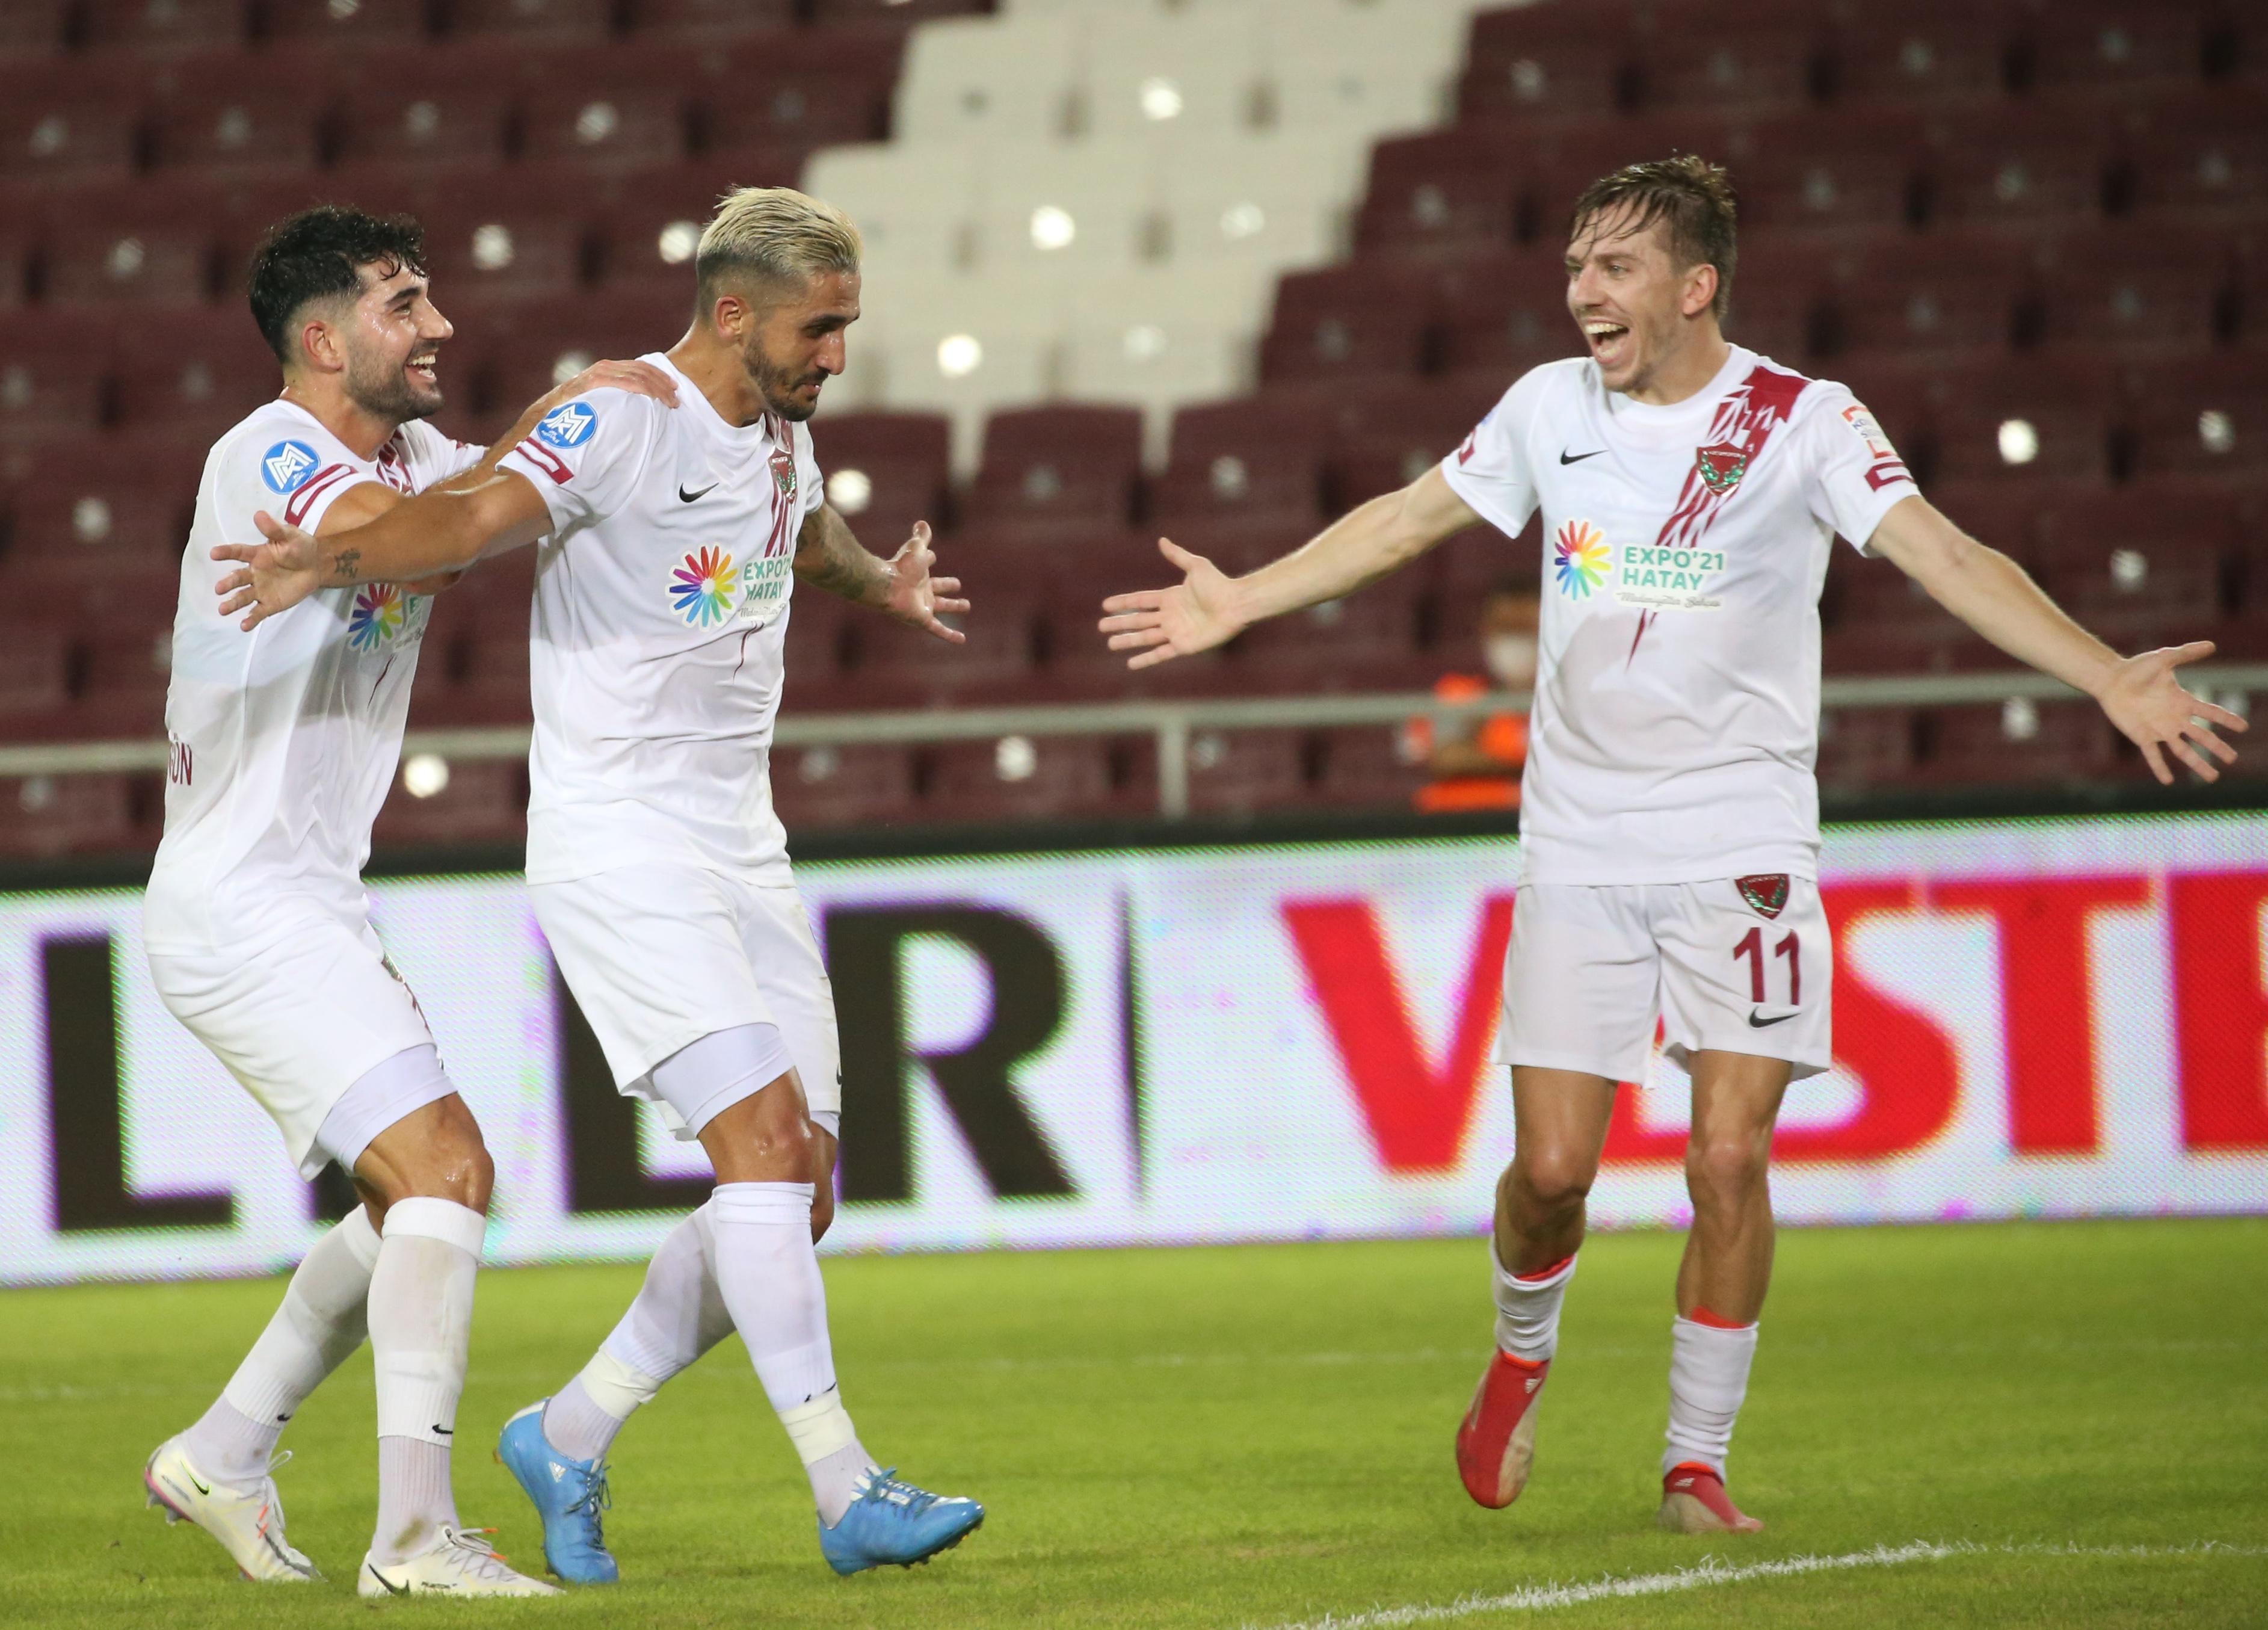 ÖZET | Hatayspor - Alanyaspor maç sonucu: 5-0